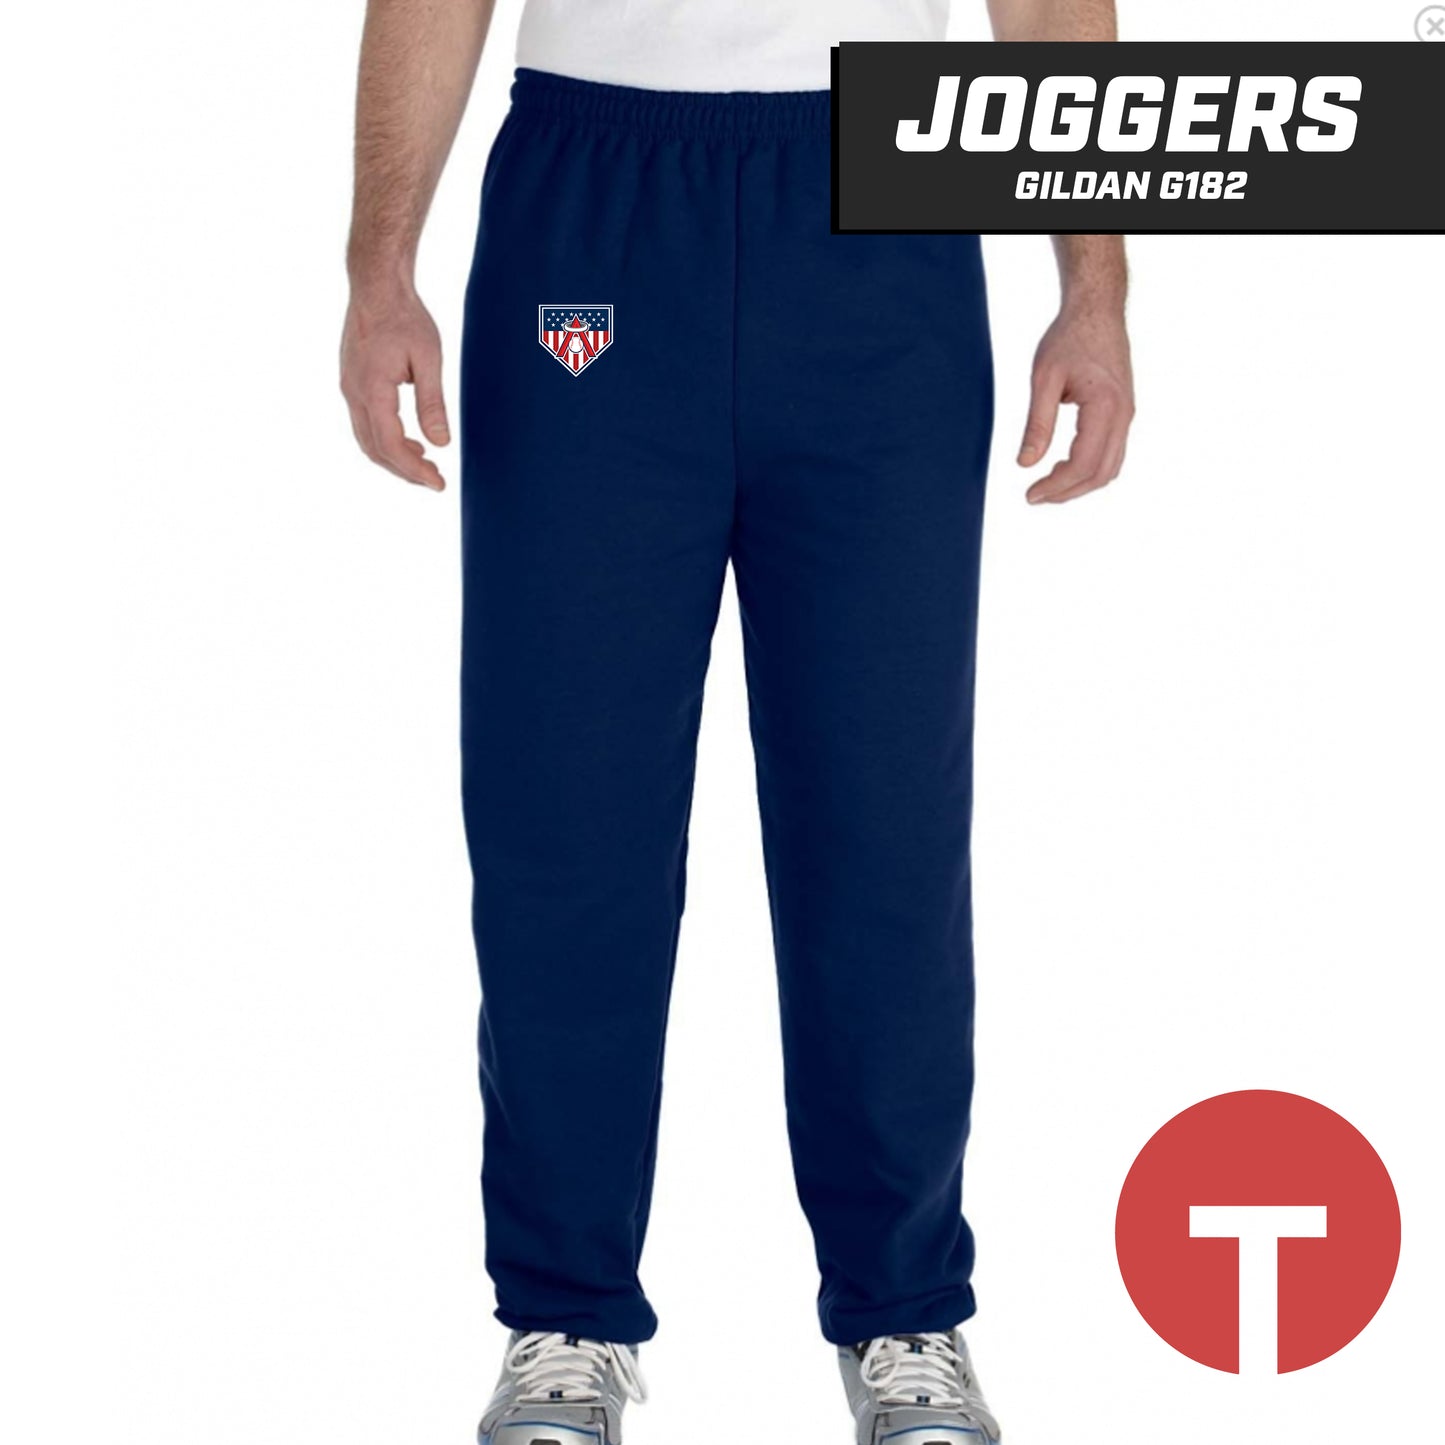 East Cobb Angels - LOGO 2 - Jogger pants Gildan G182